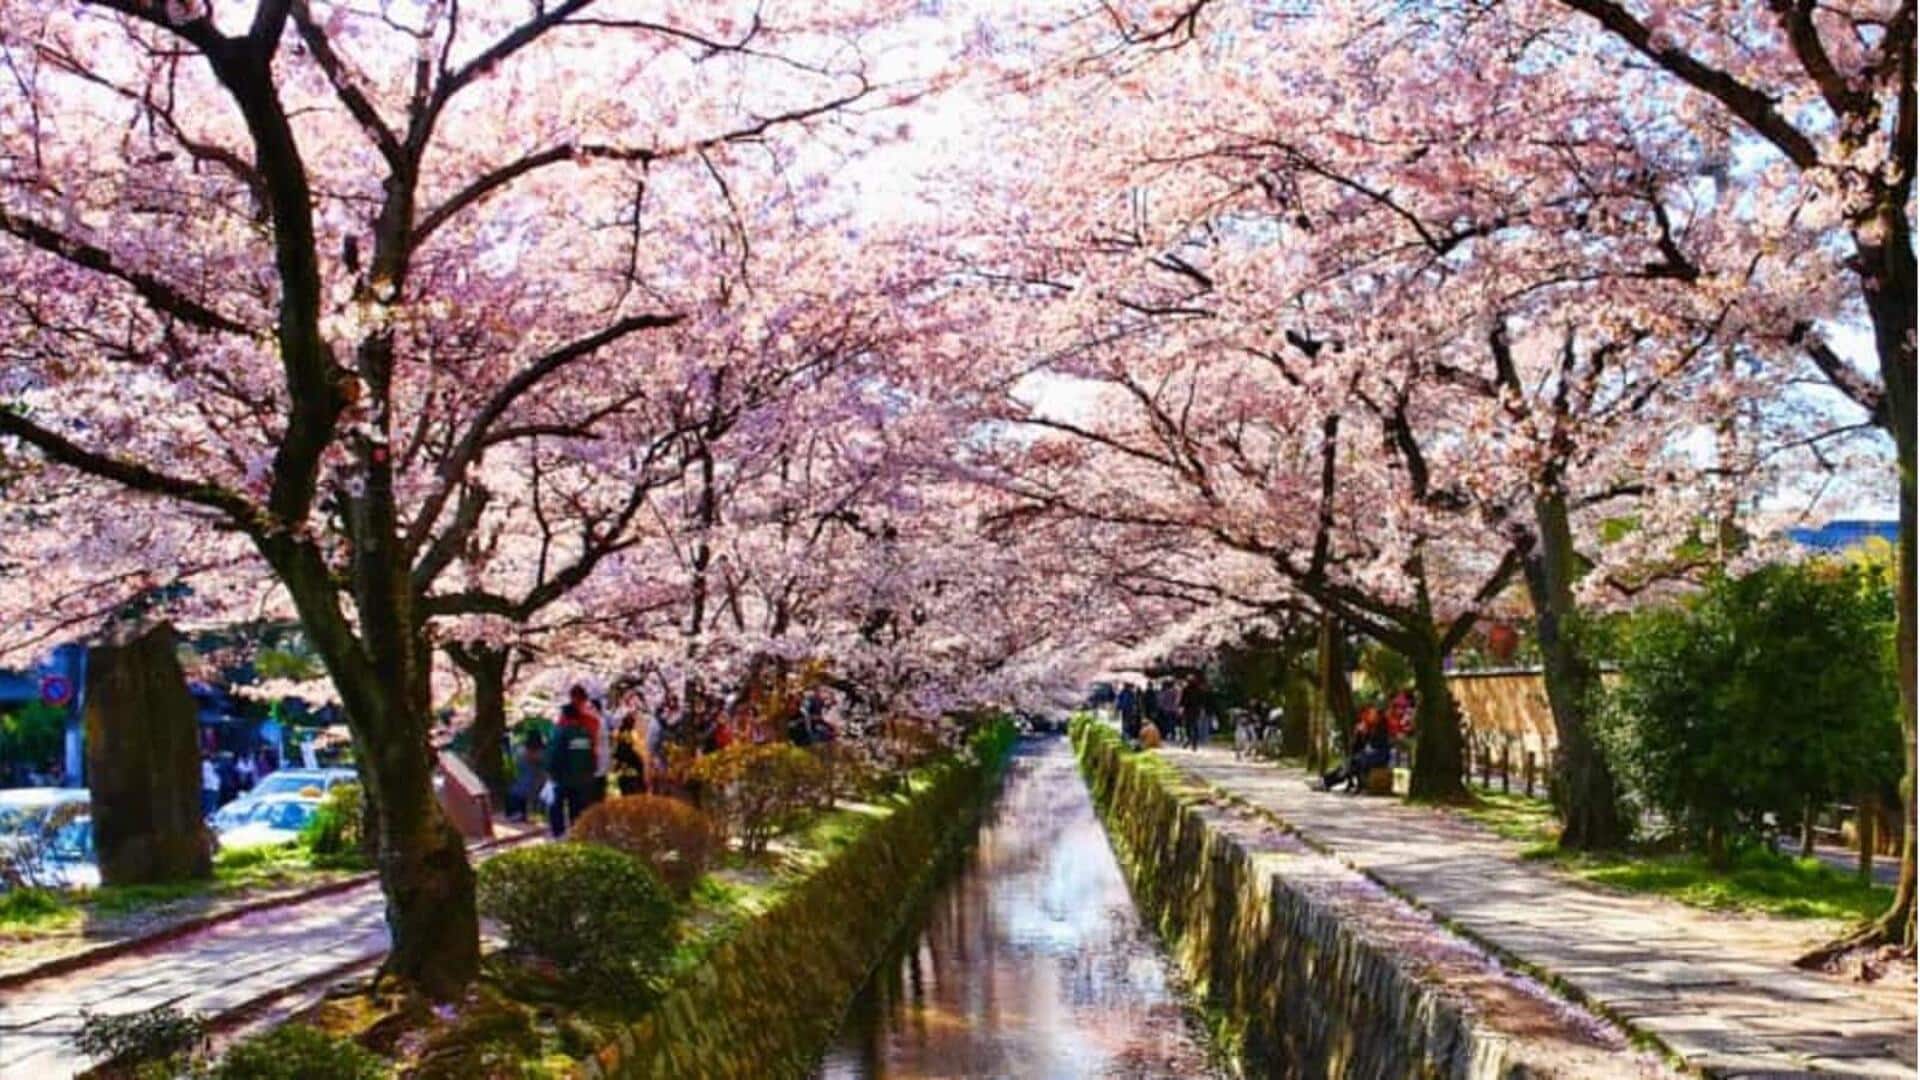 Jepang merupakan tempat sempurna untuk menyaksikan jalur bunga sakura yang menakjubkan